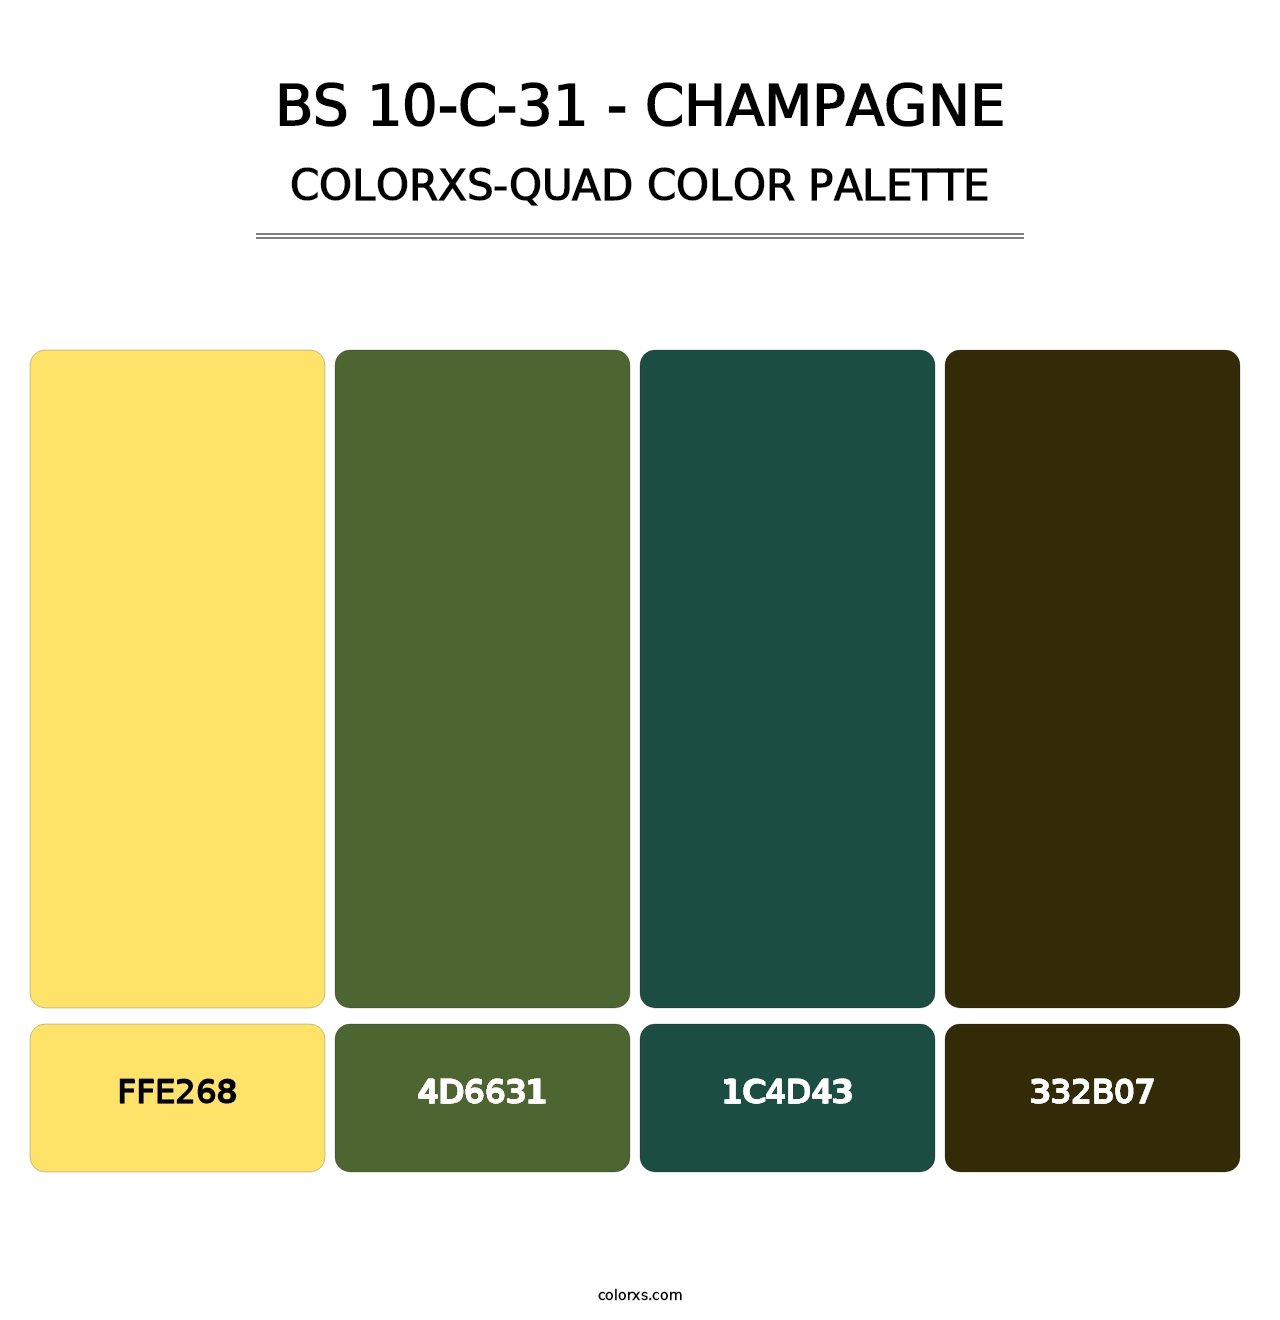 BS 10-C-31 - Champagne - Colorxs Quad Palette